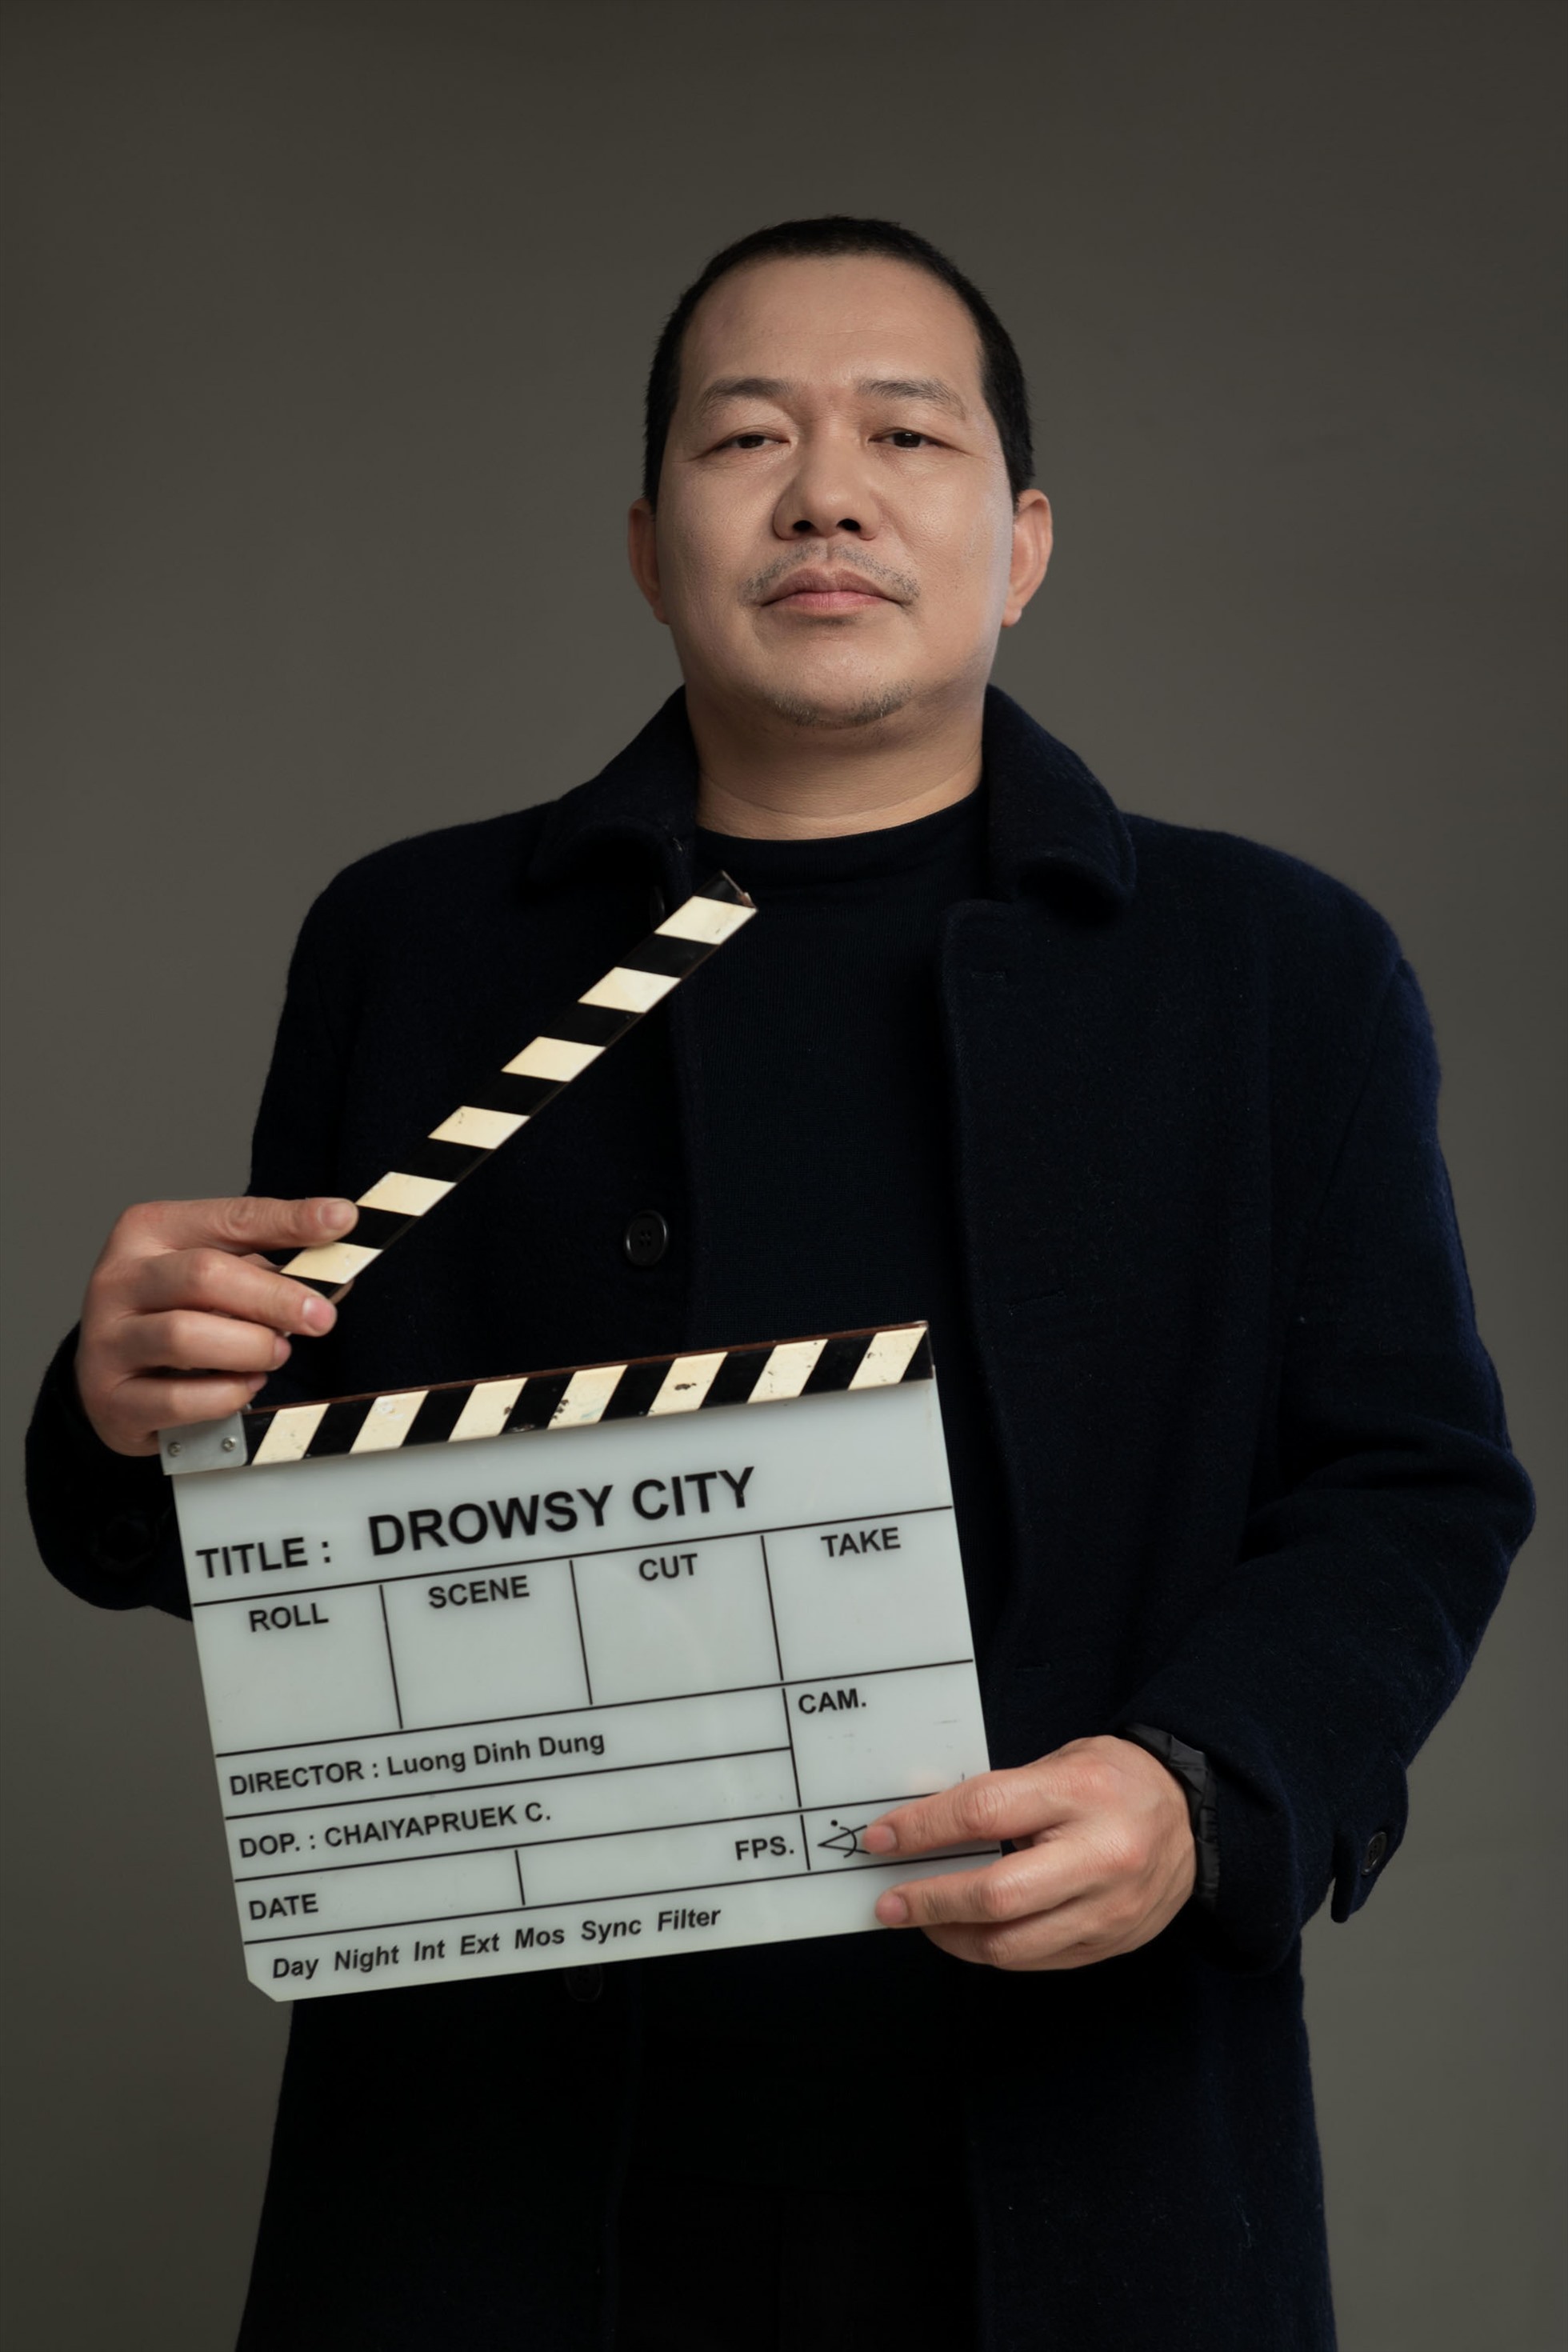 Đạo diễn Lương Đình Dũng dành nhiều tâm huyết cho dự án phim về các nhân vật lịch sử Vệt Nam. Ảnh: Lương Đình Dũng